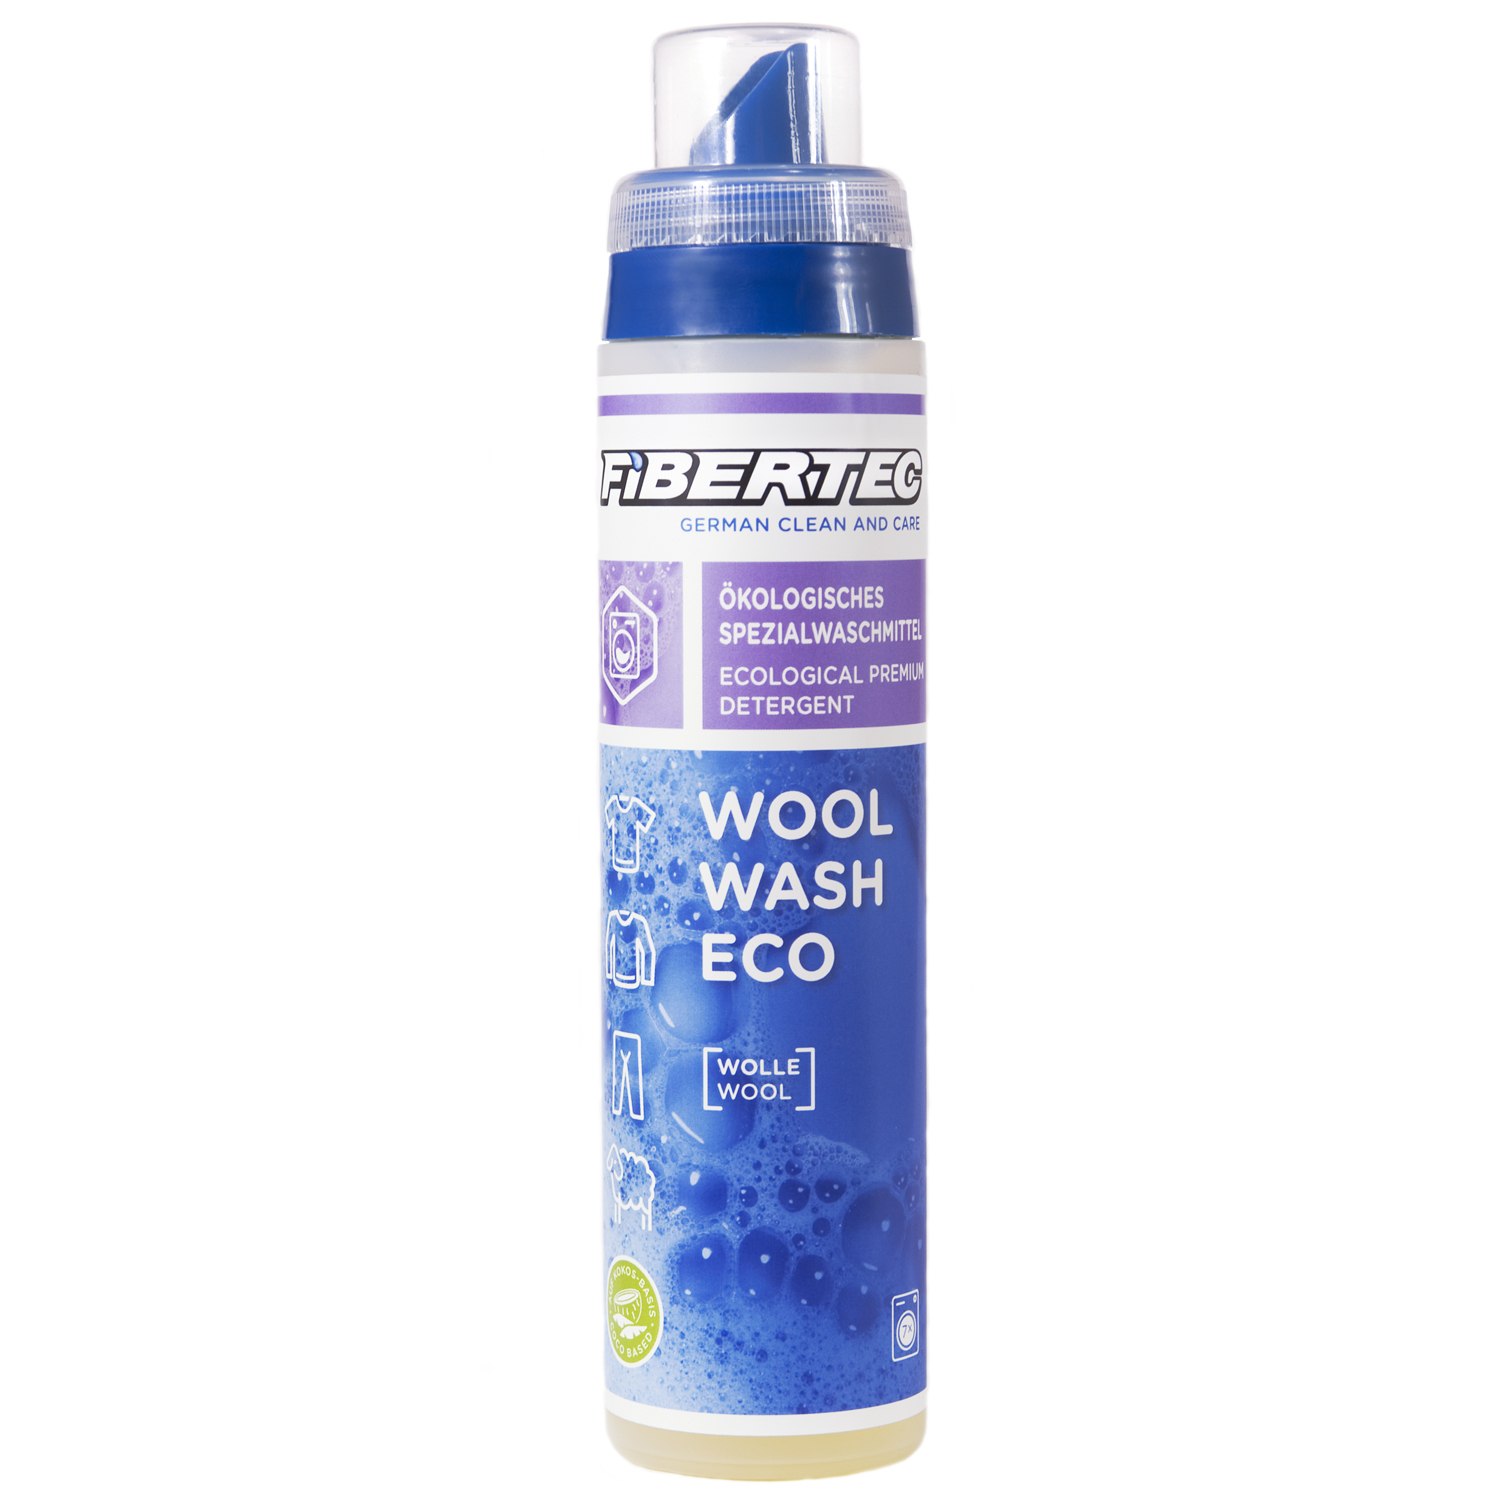 Foto de Fibertec Wool Wash Eco Detergent for Wool 250 ml